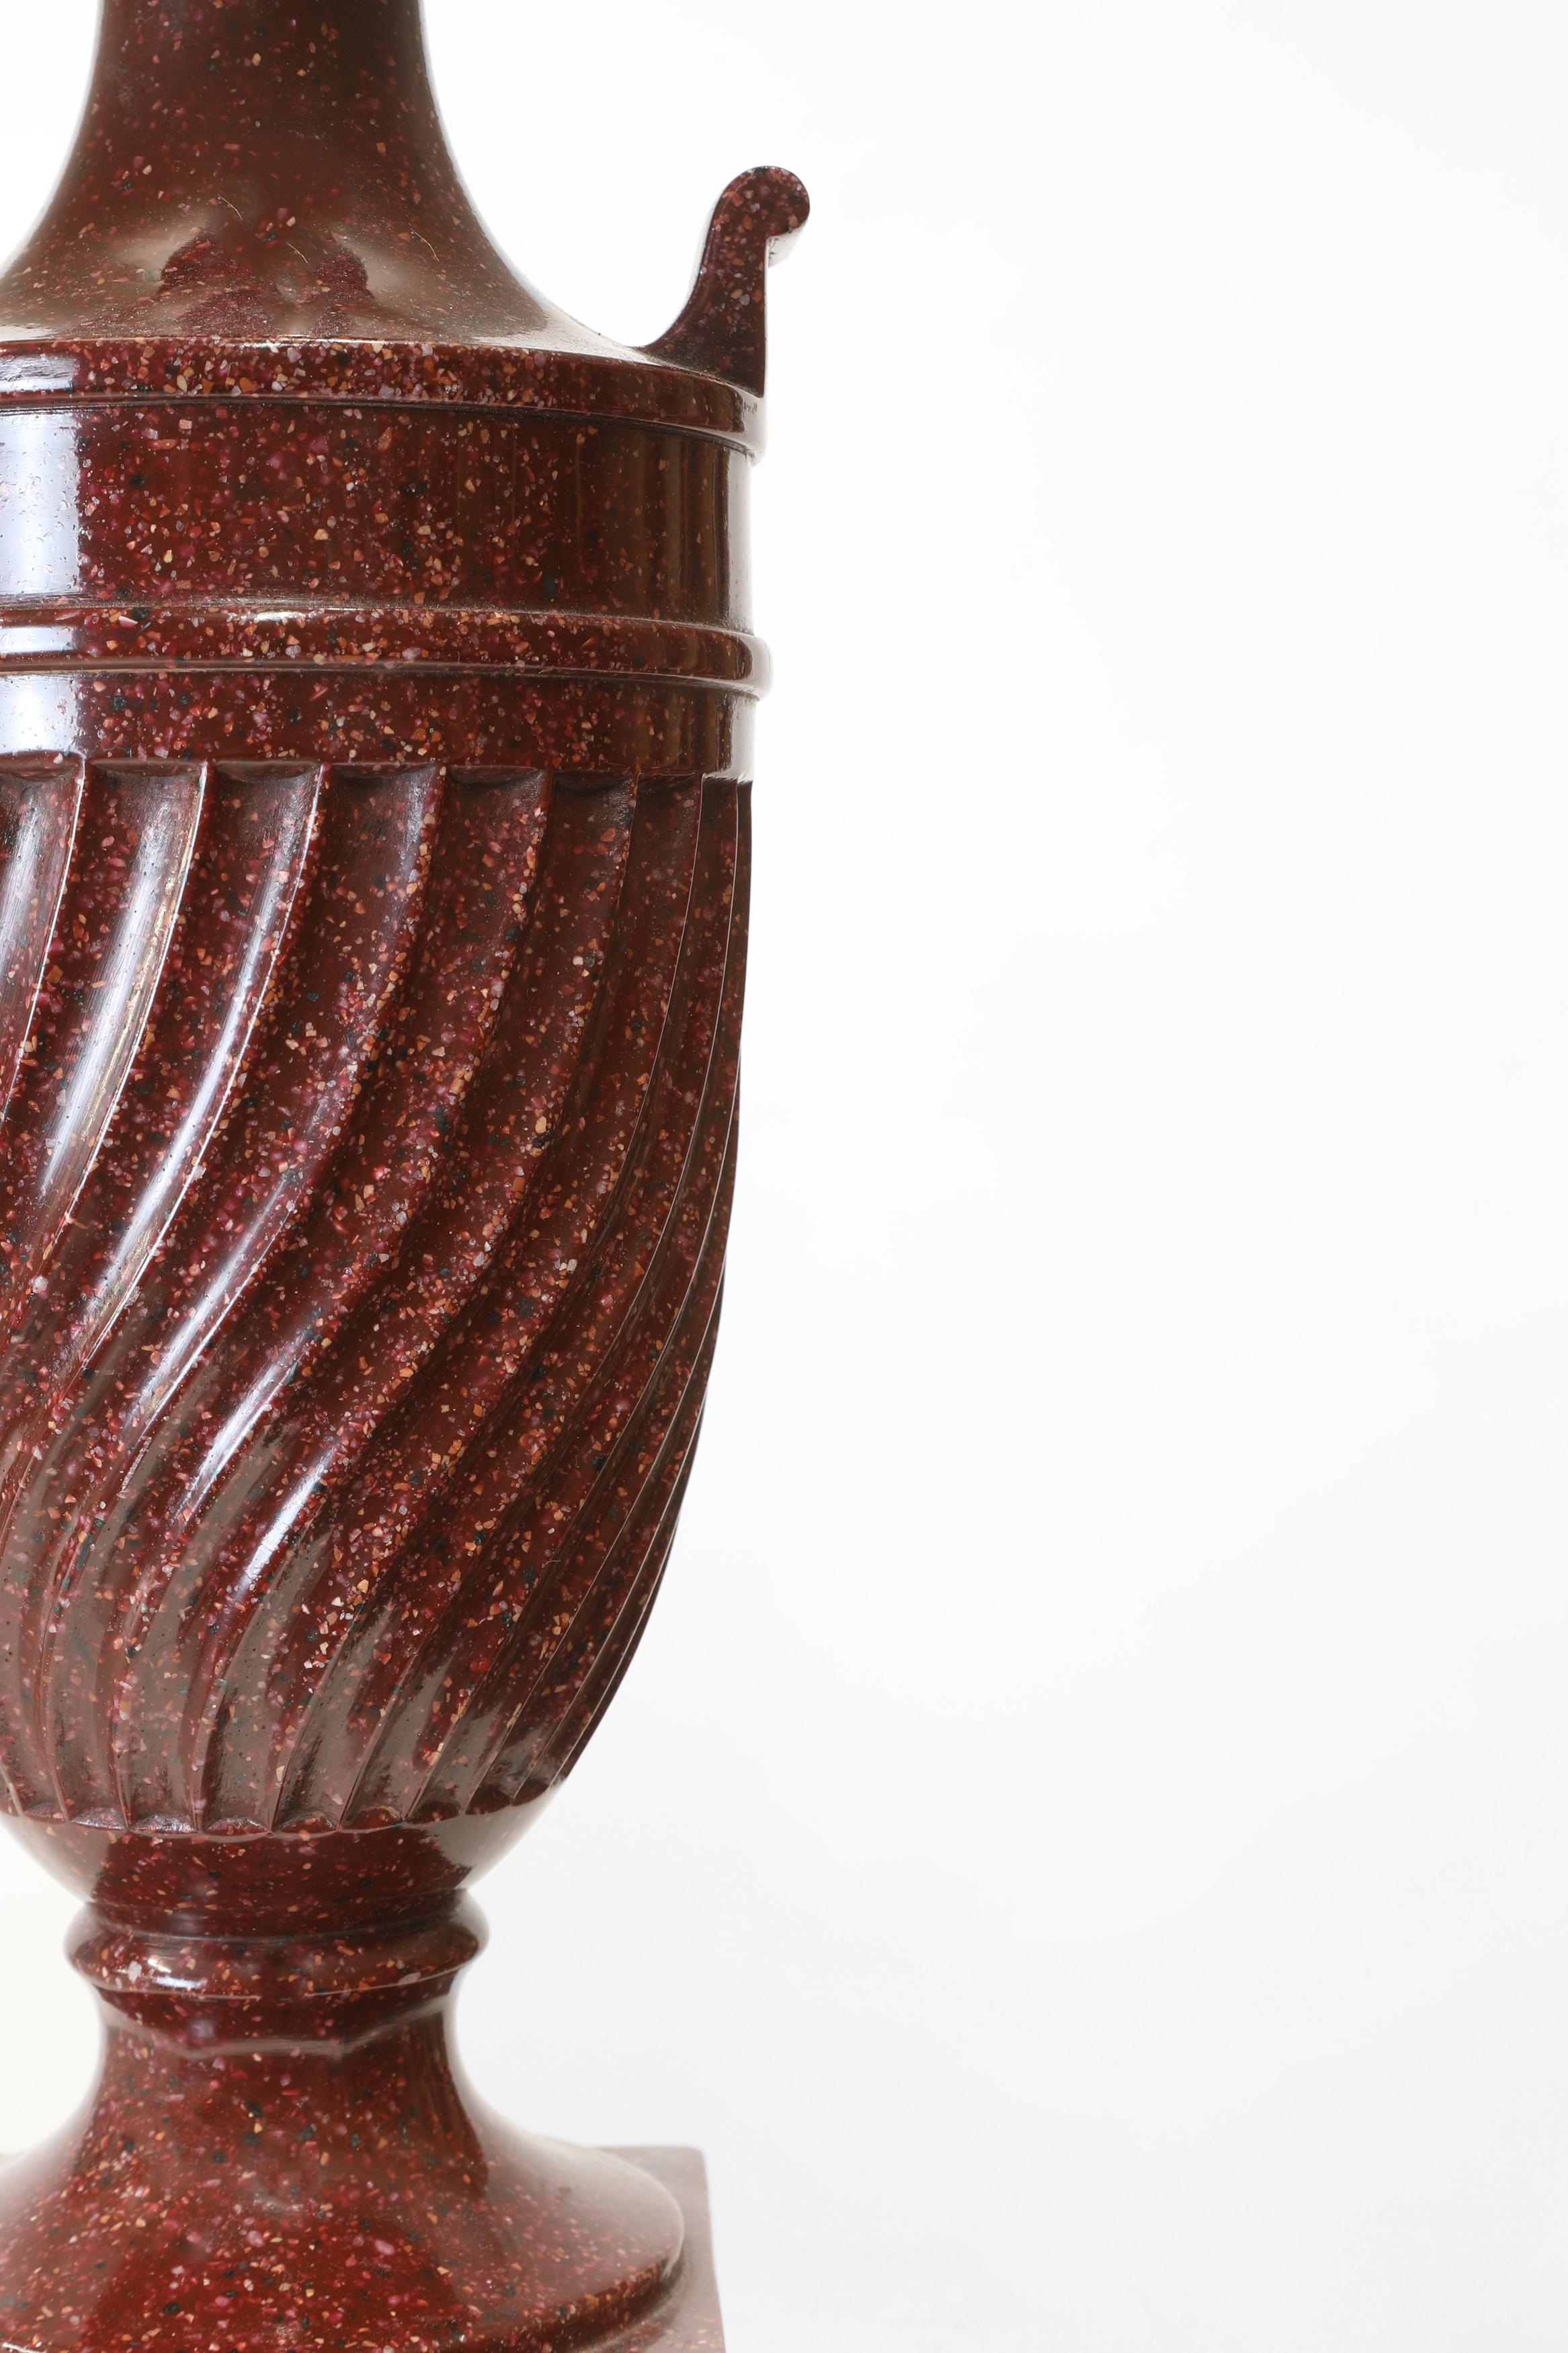 Paire classique de lampes de table en porphyre simulé rouge du 20e siècle. Chacune modélise une élégante forme d'urne cannelée spiralée.

 Le porphyre est une pierre dure et rare, de couleur rouge pourpre, qui était très prisée dans l'Antiquité pour